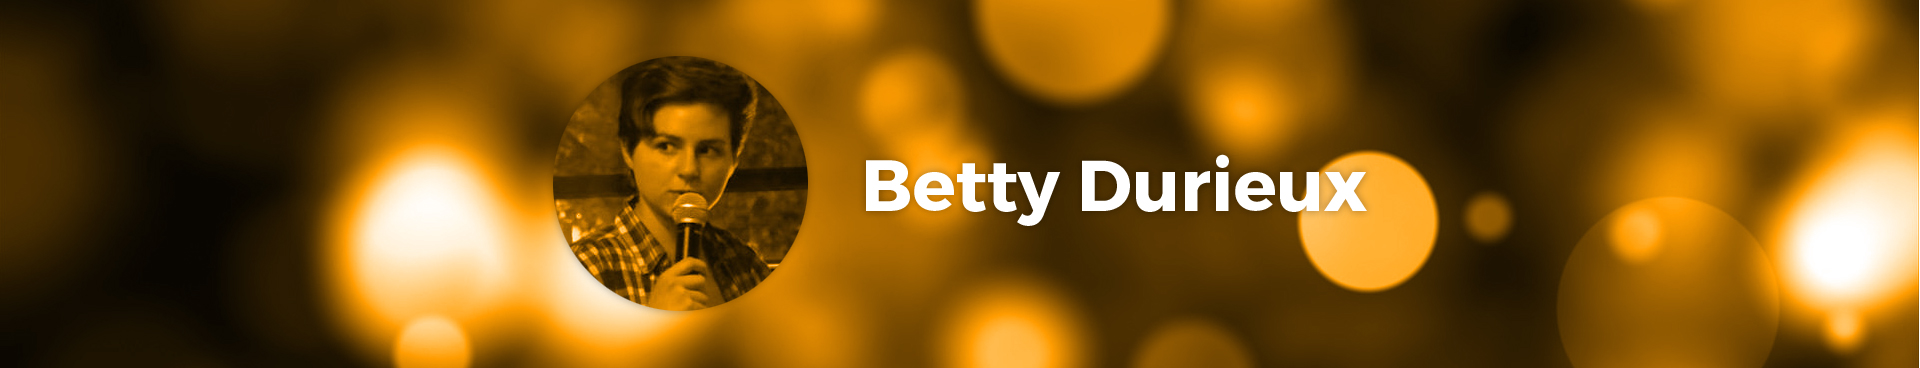 Betty Durieux, artiste Le Spot du Rire